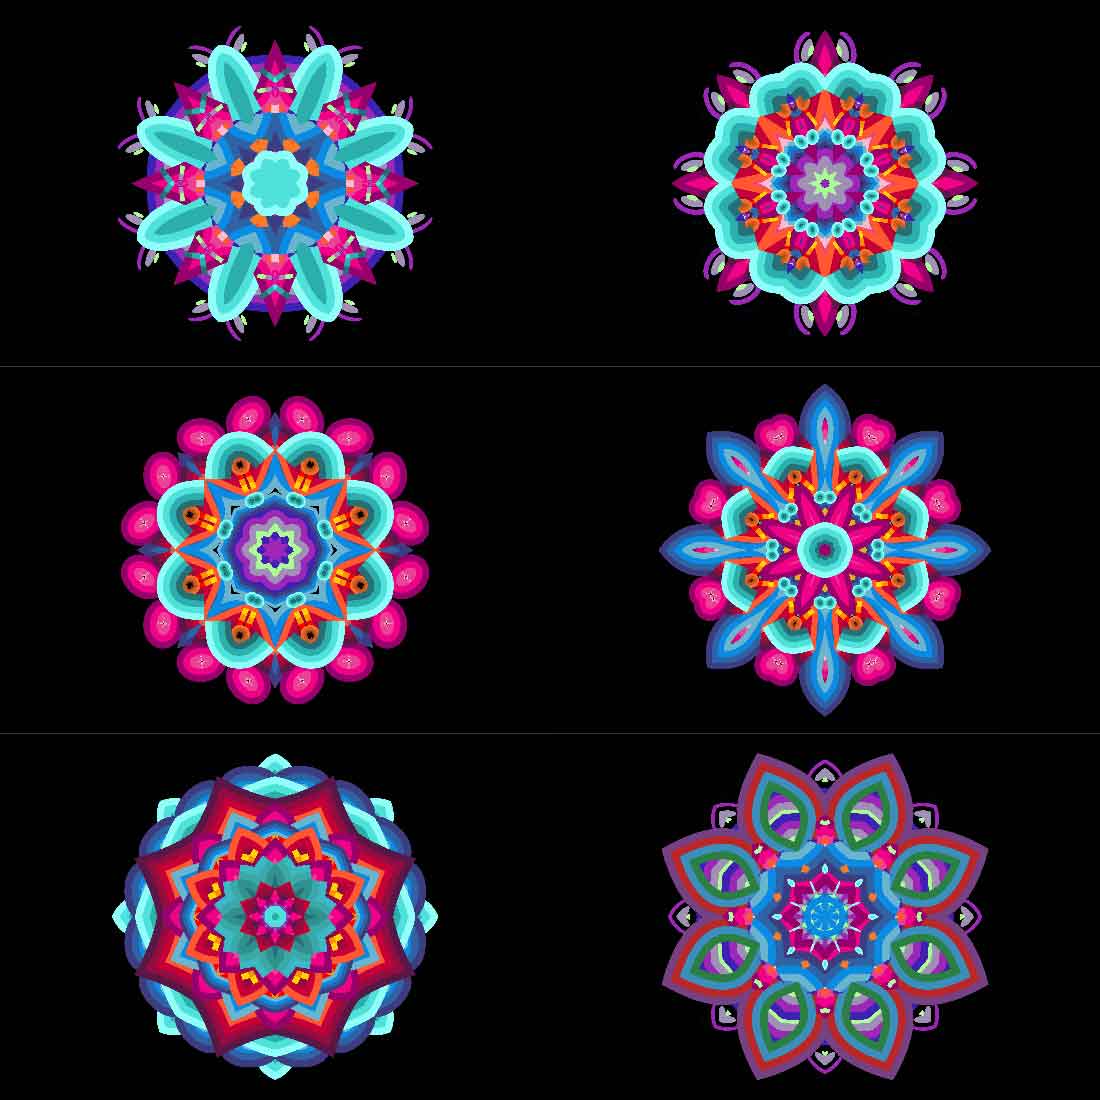 6 Mandala Art Bundles cover image.